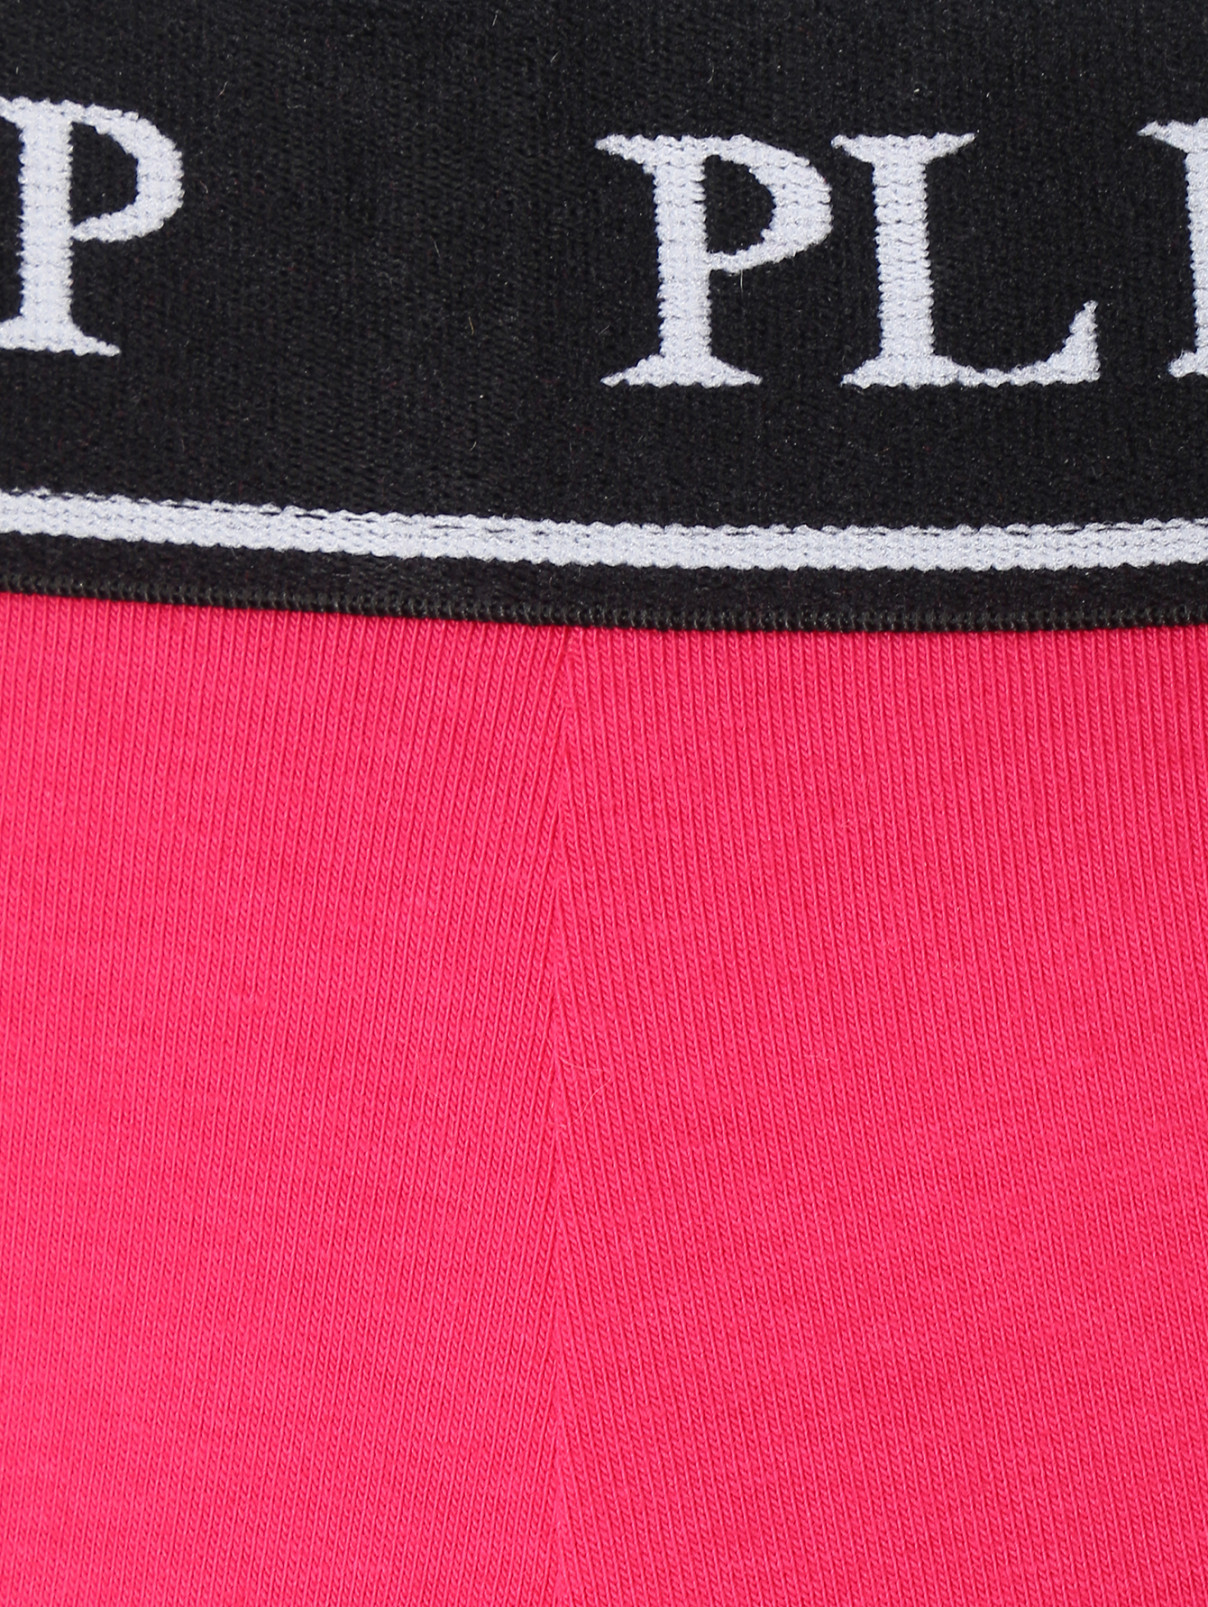 Леггинсы из хлопка на резинке Philipp Plein  –  Деталь  – Цвет:  Розовый